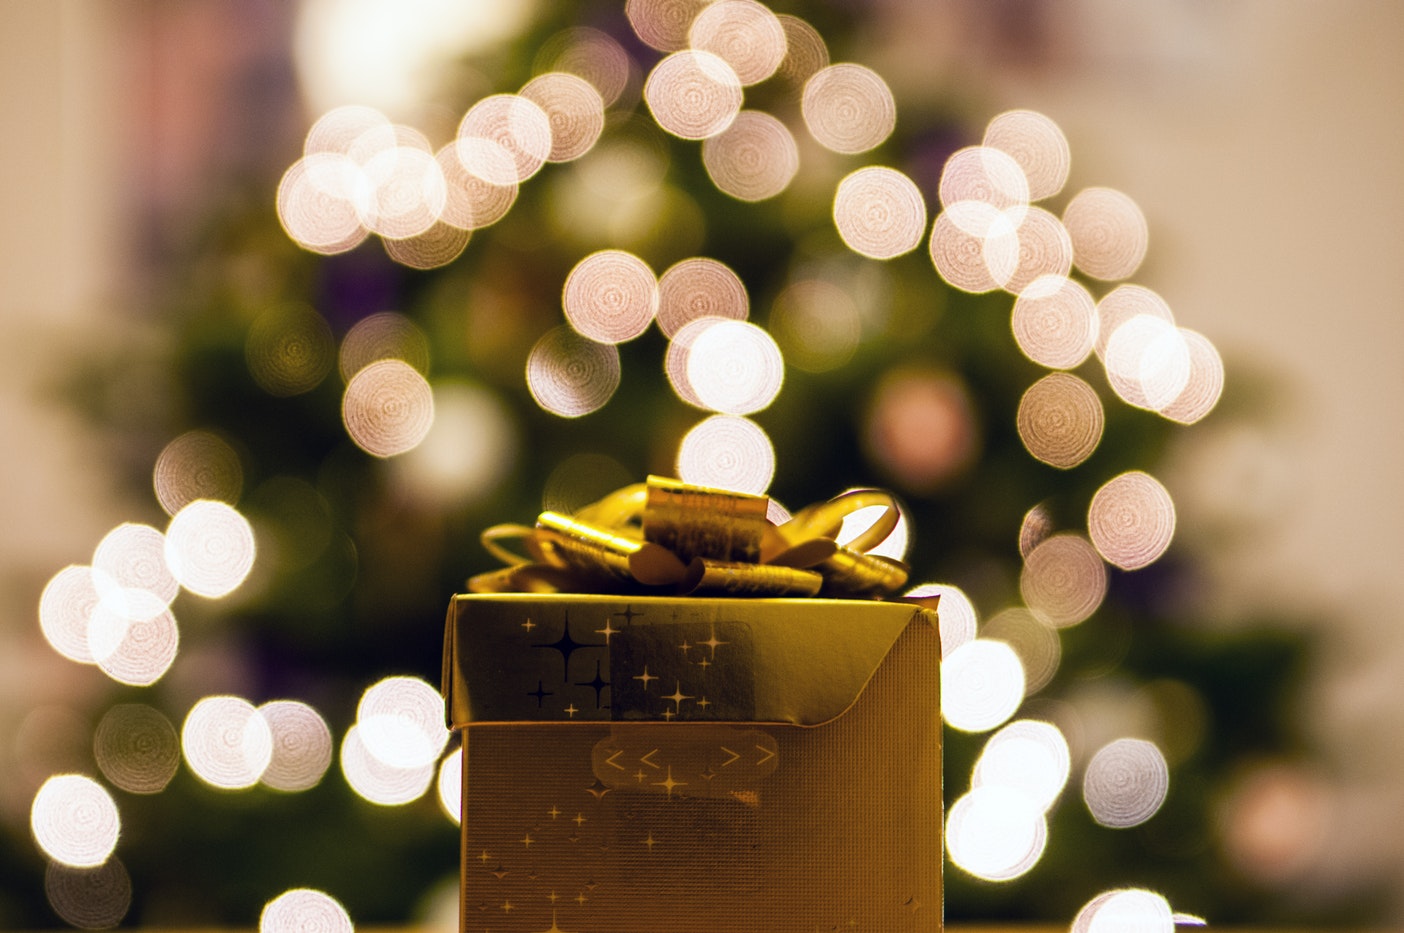 dauw journalist Ale 10 cadeautips voor échte kerstfans - Christmaholic.nl